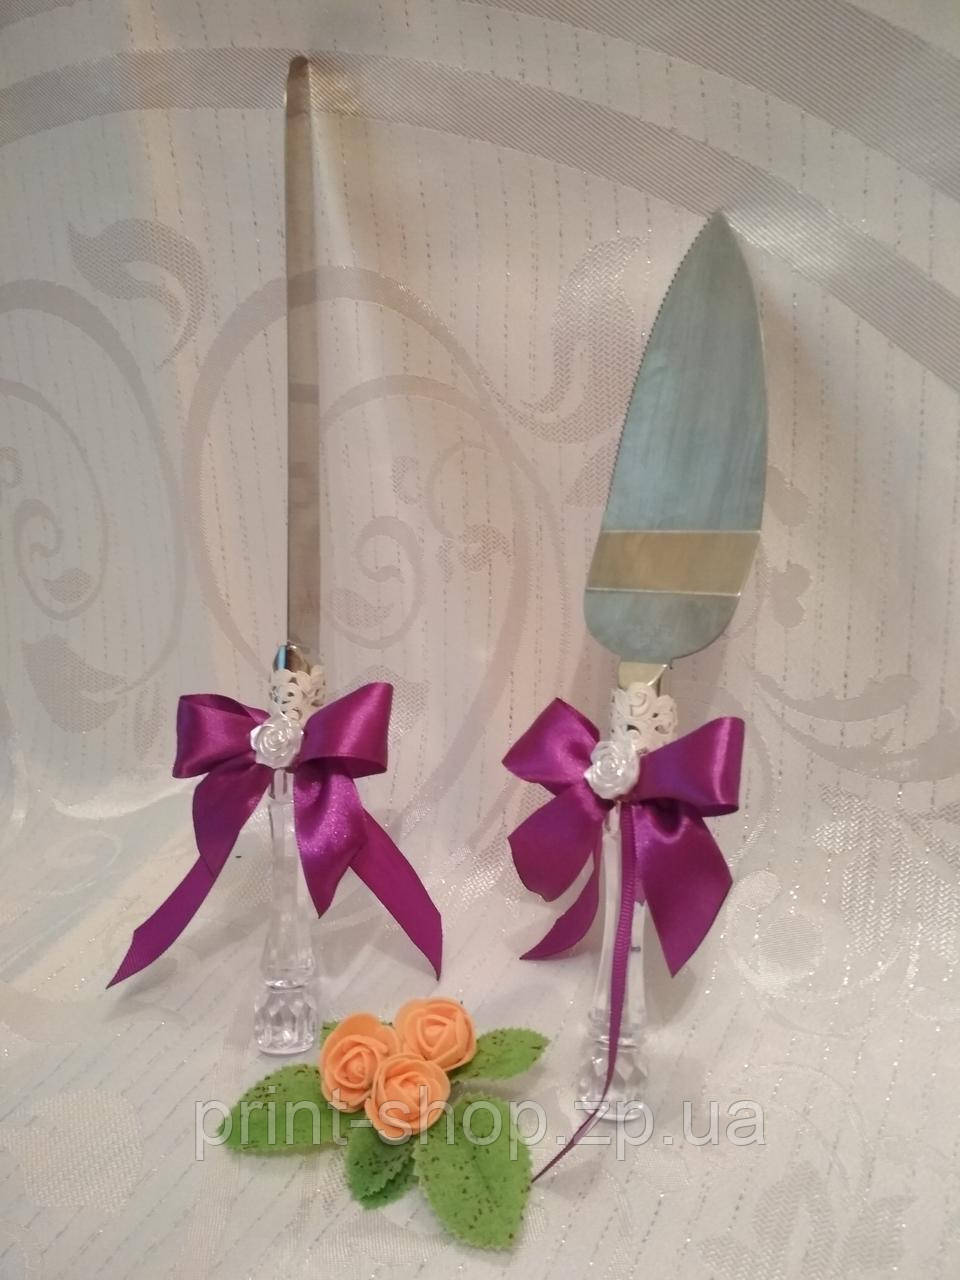 Ніж і лопатка для весільного торта в фіолетовому стилі